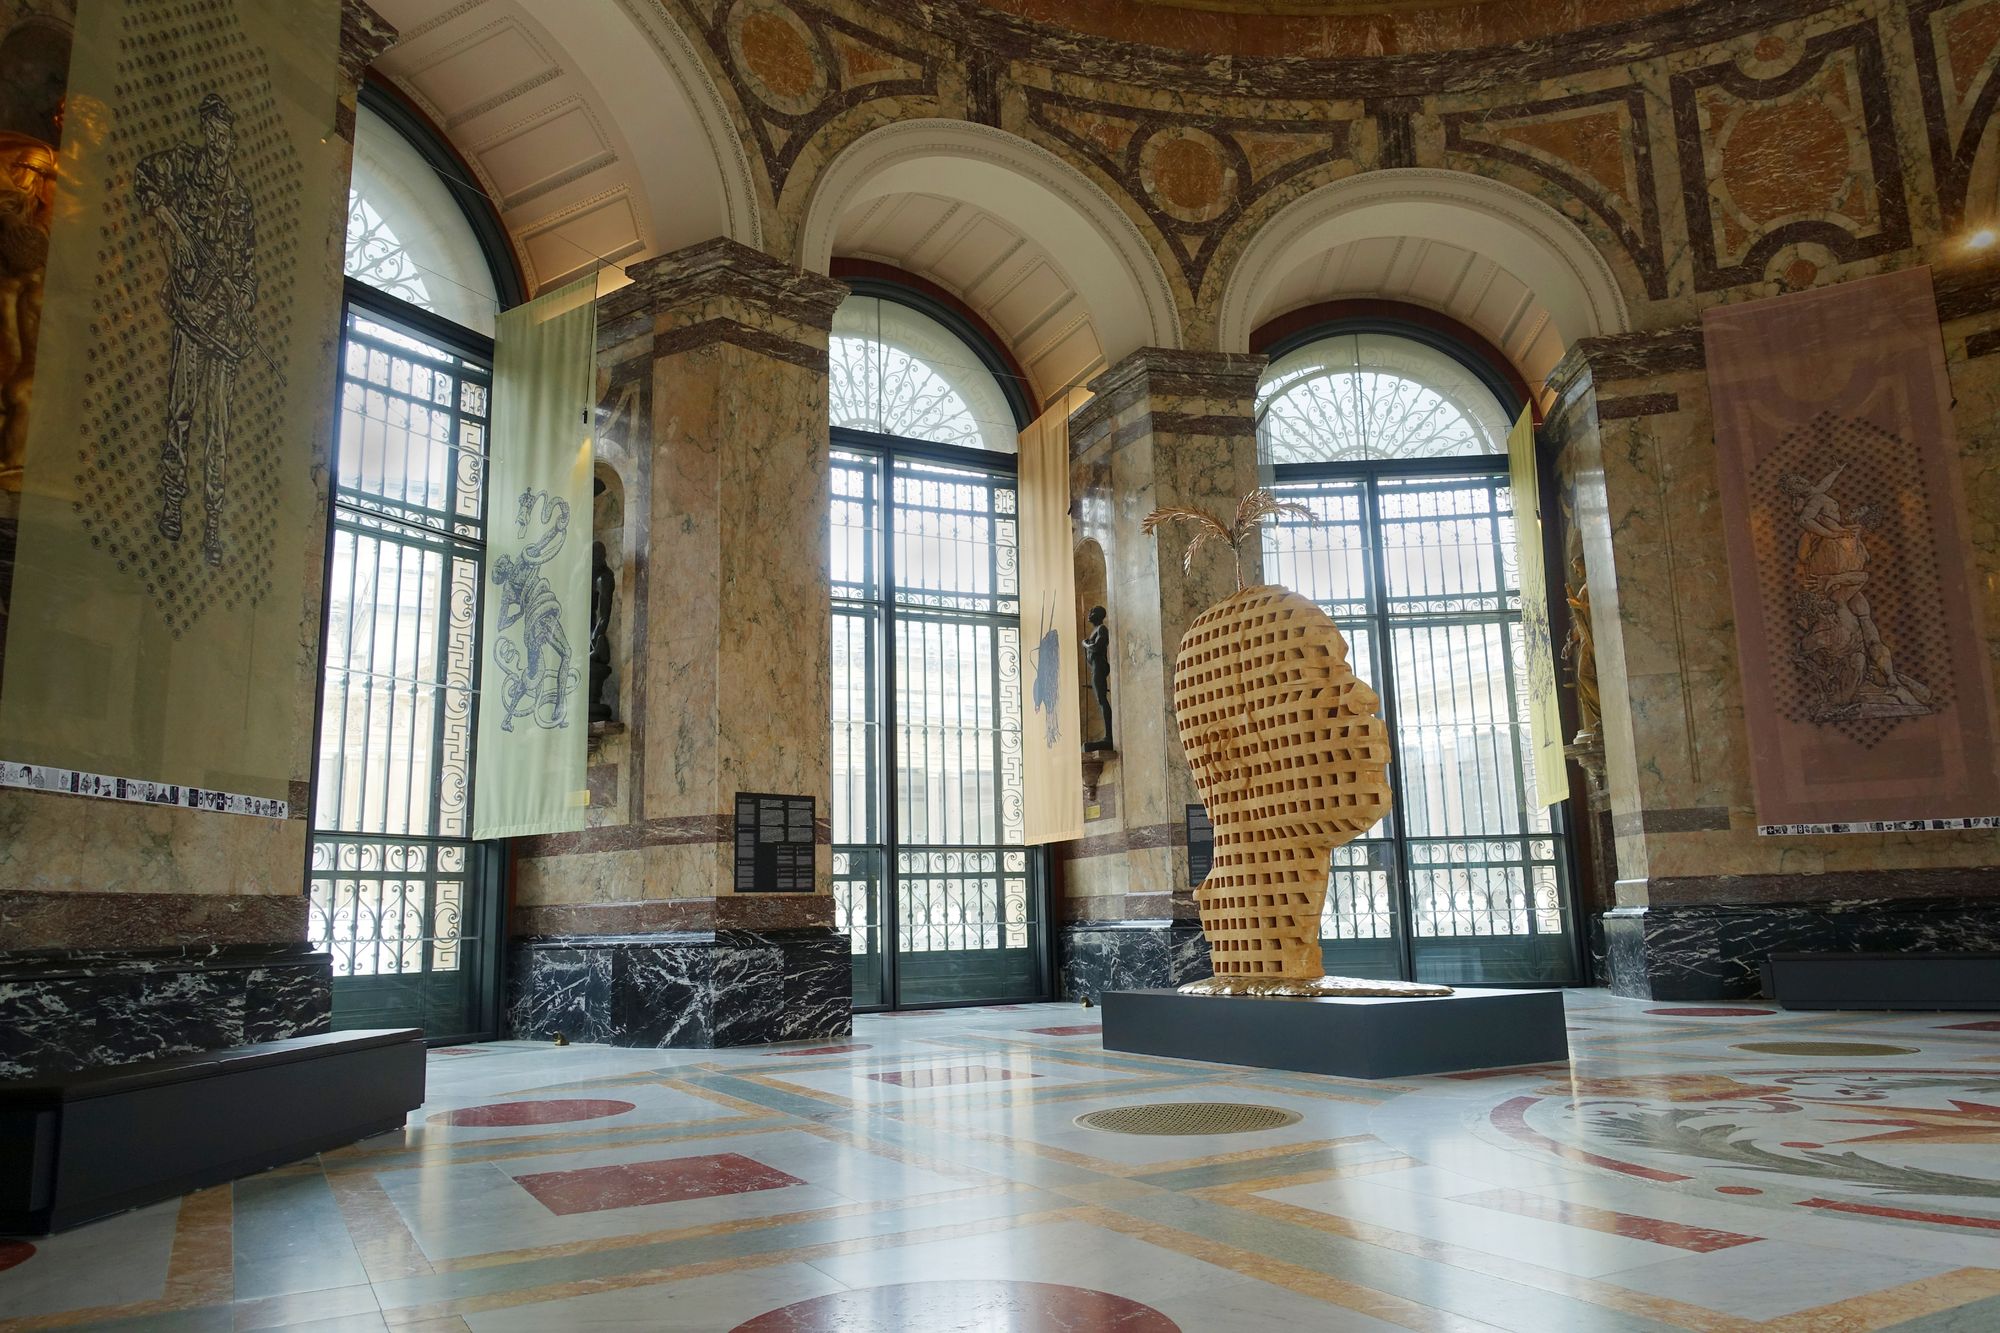 Las obras de Aimé Mpane y Jean-Pierre Müller en la rotonda principal del museo. © Tim Debroyer